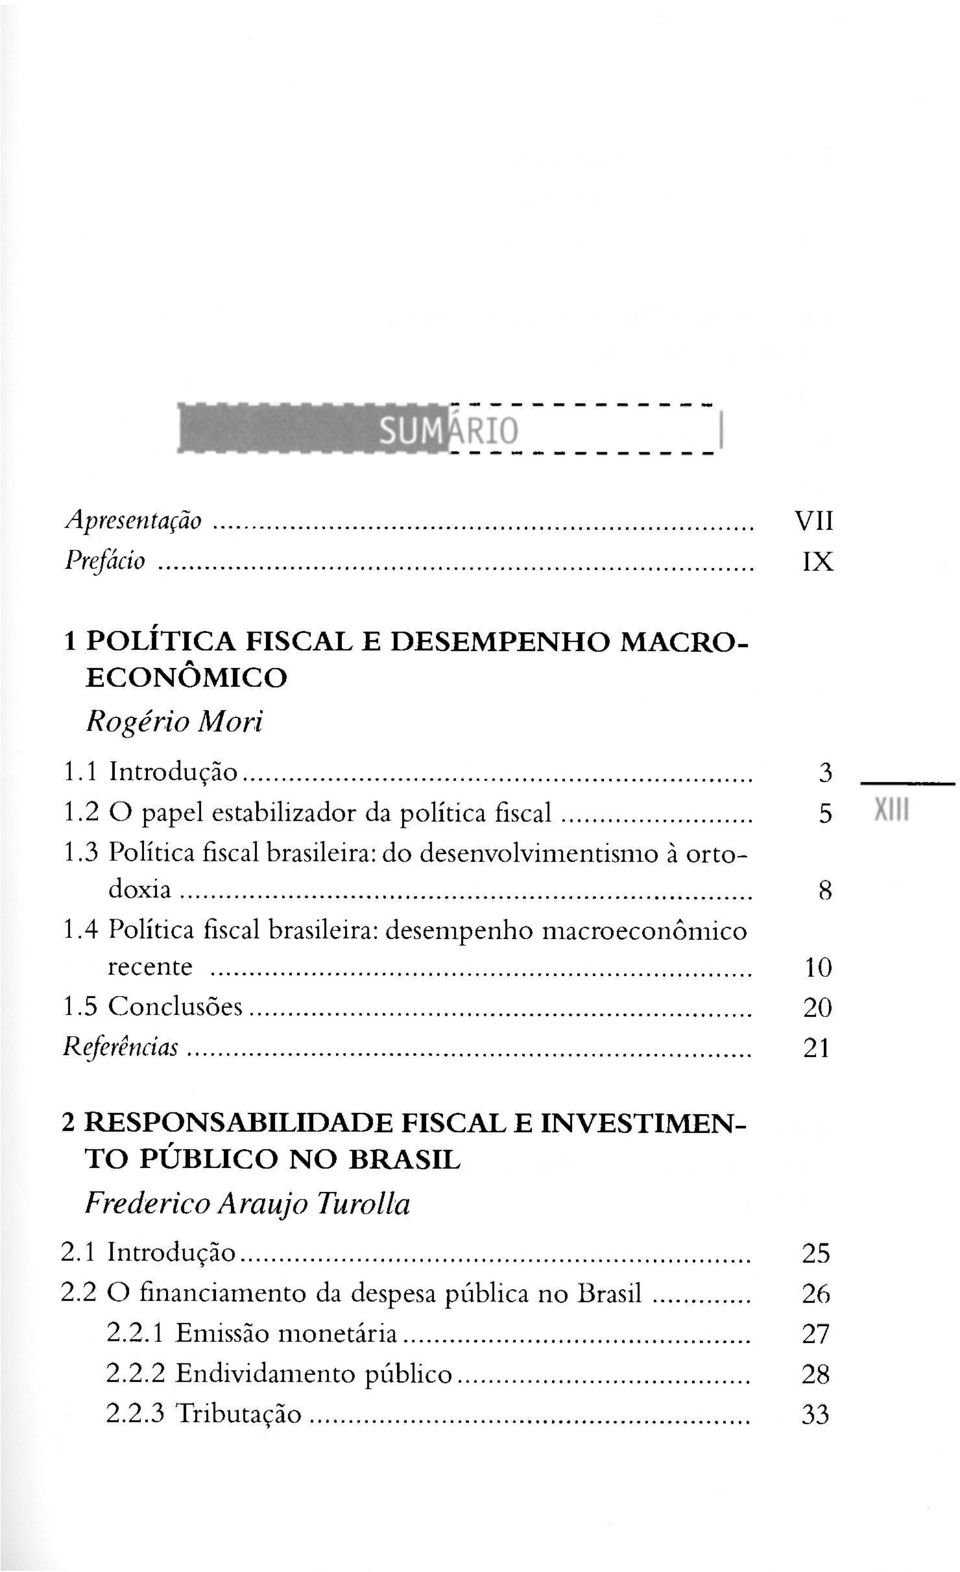 4 Política fiscal brasileira: desempenho macroeconômico recente 10 1.